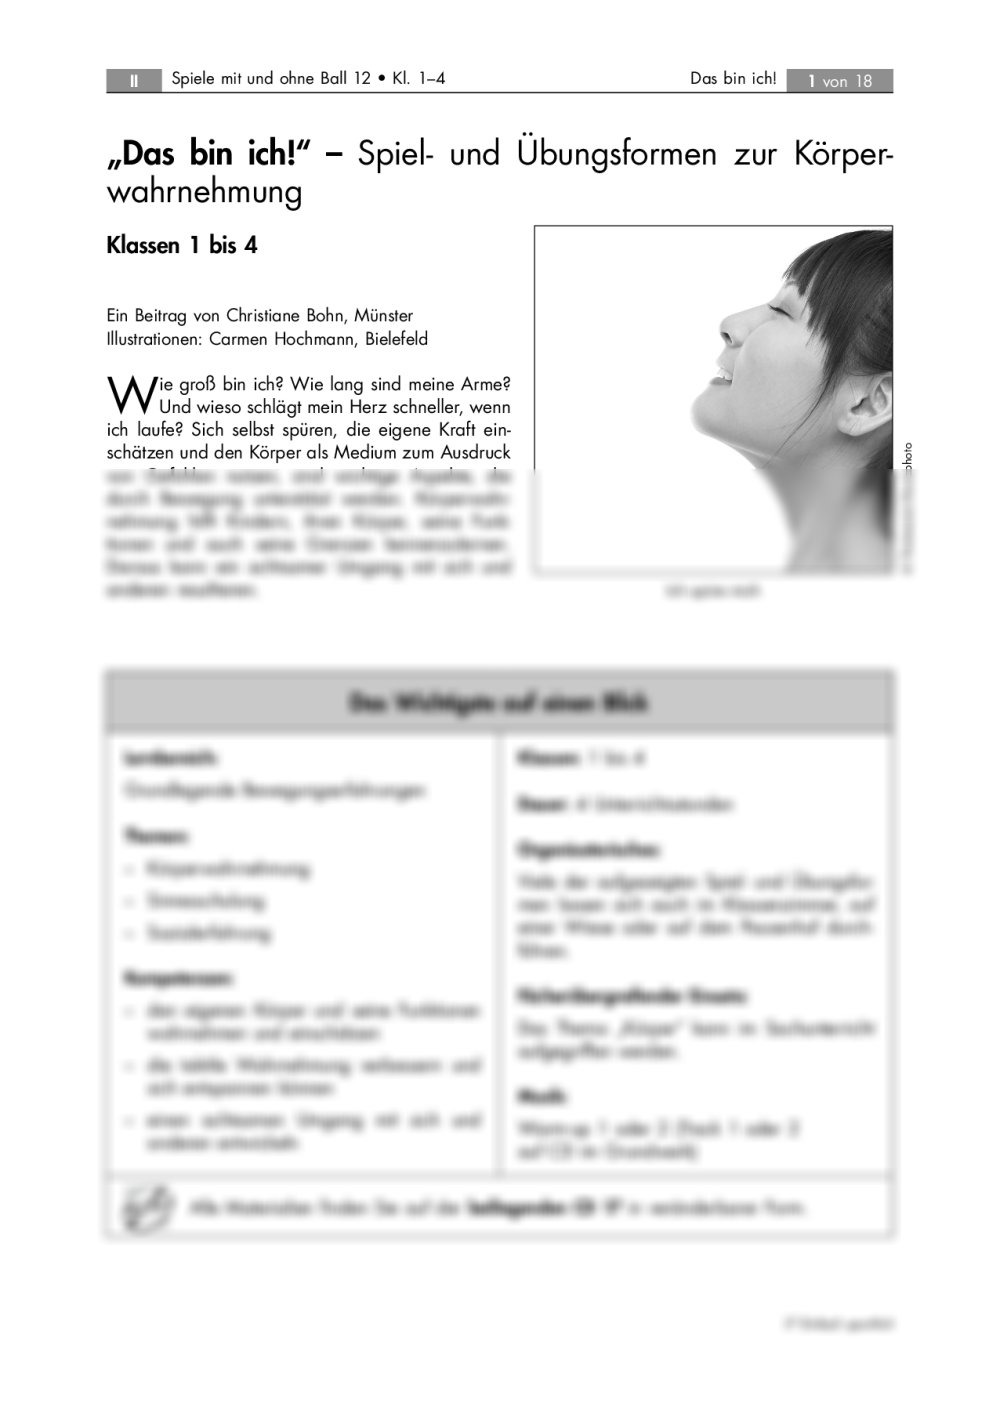 Spiel- und Übungsformen zur Körperwahrnehmung - Seite 1